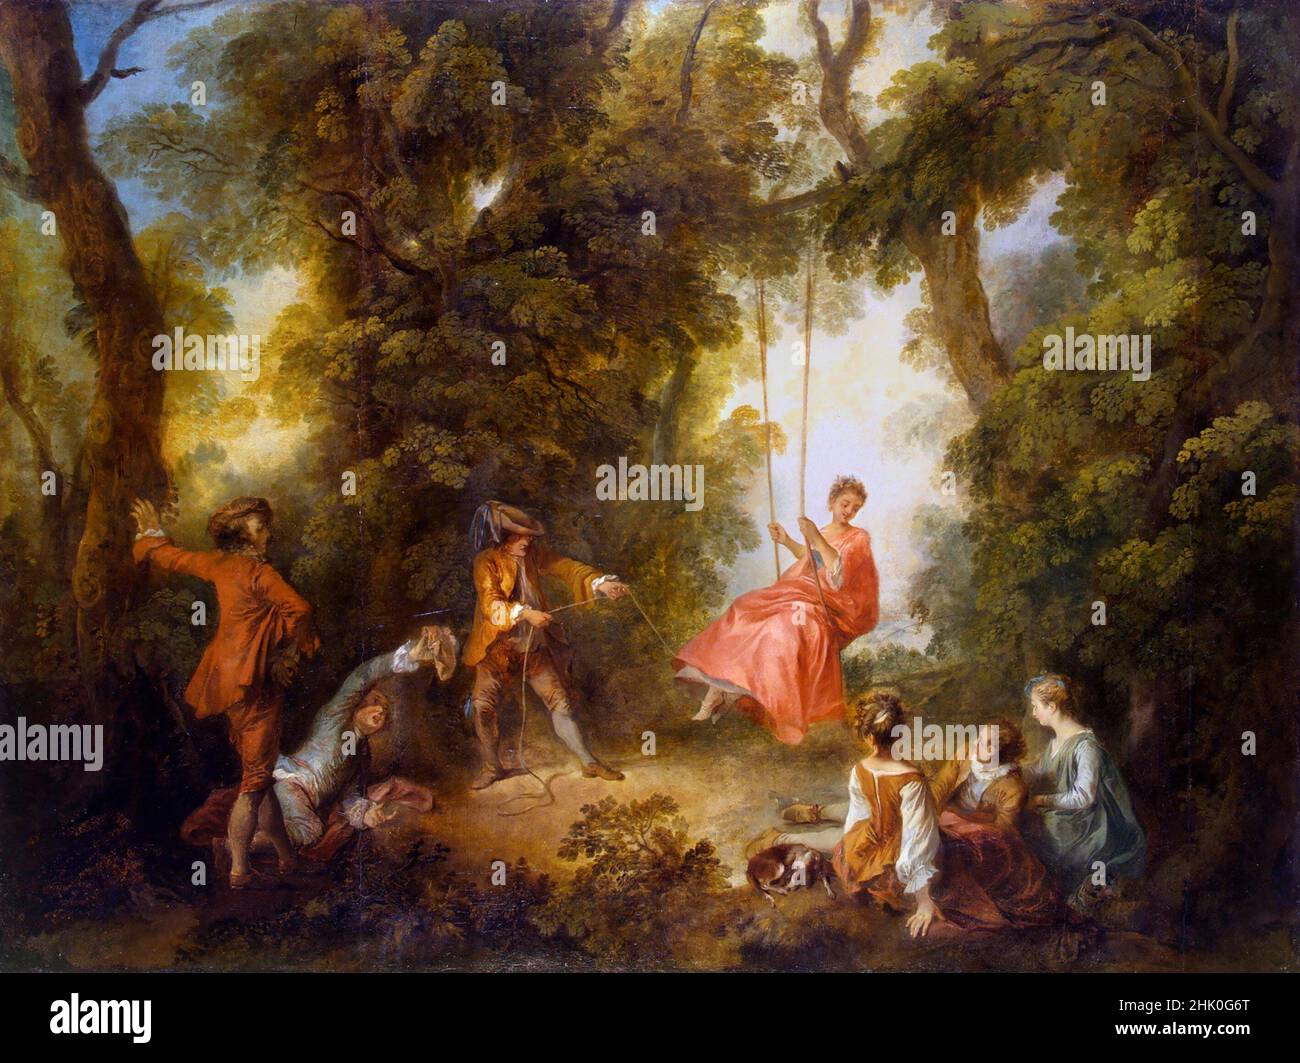 Swing de l'artiste français Nicolas Lancret (1690-1743), huile sur toile, 1730s Banque D'Images